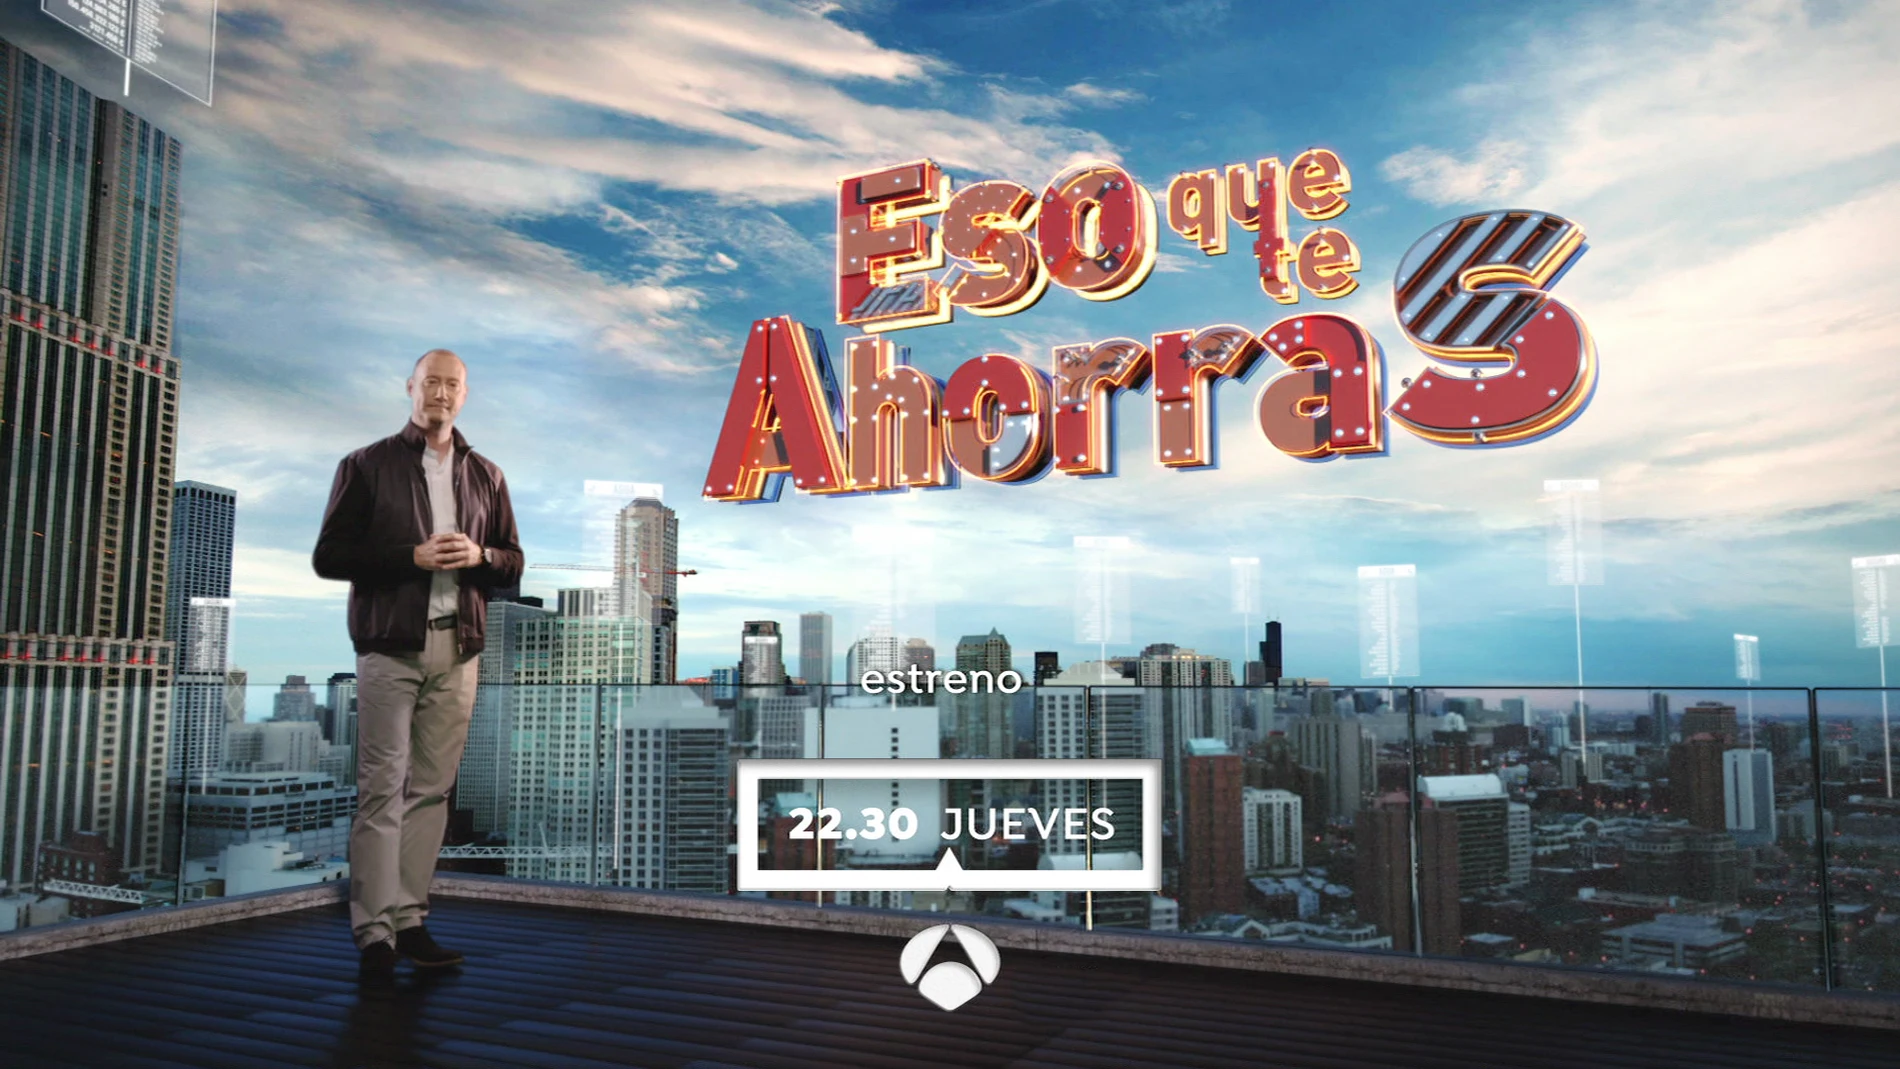 El jueves a las 22:30 horas, estreno de 'Eso que te ahorras', en Antena 3